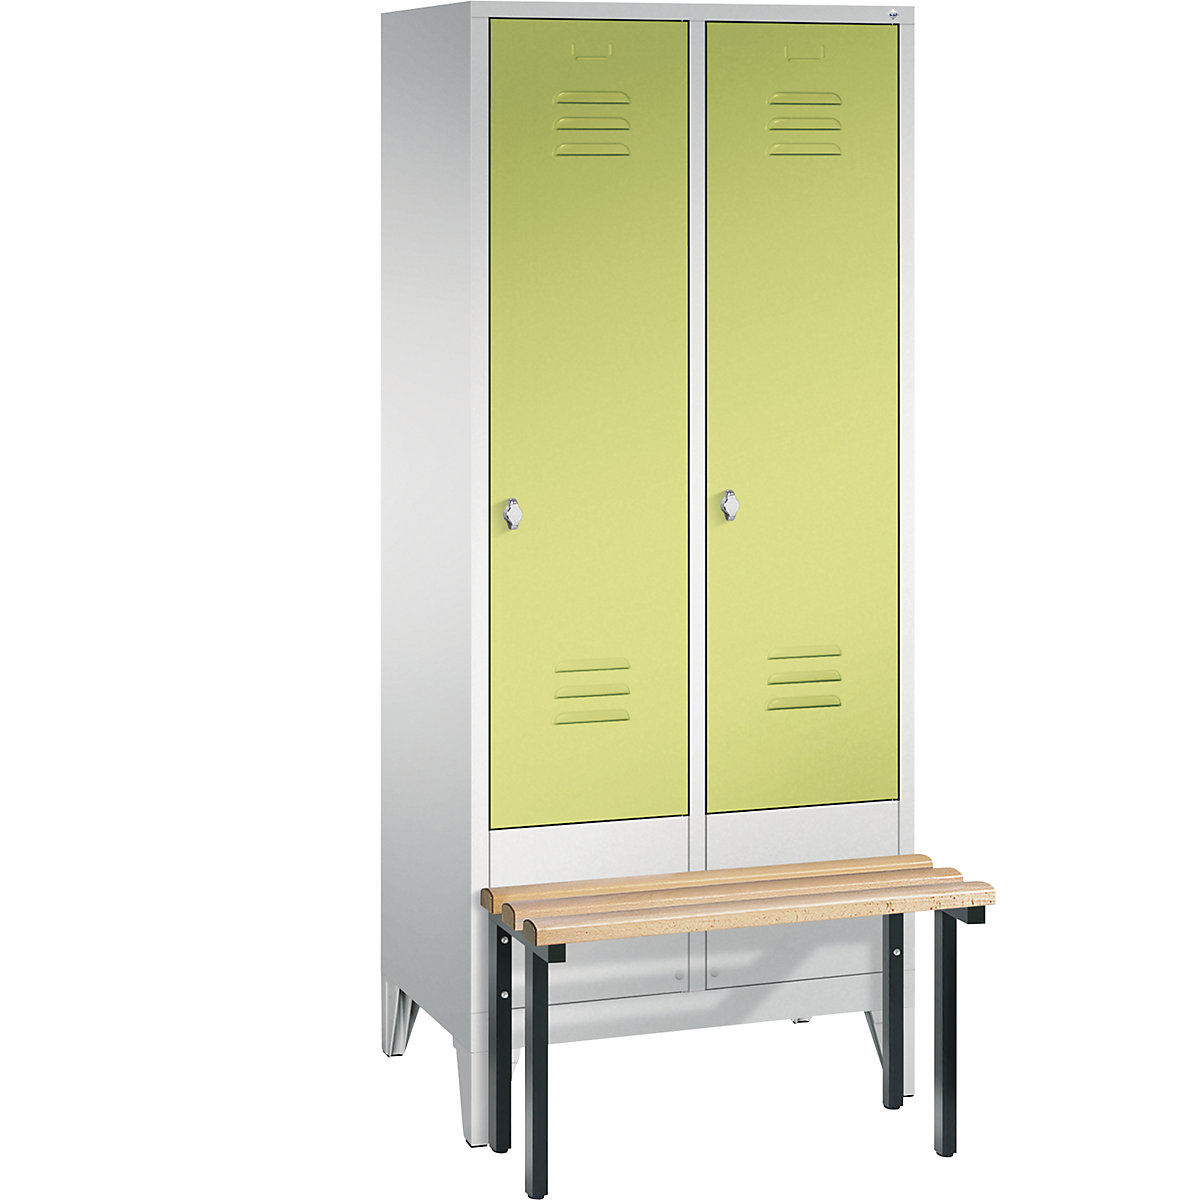 Garderobna omara CLASSIC s klopjo – C+P, 2 predelka, širina 400 mm/predelek, svetlo sive / rumeno zelene barve-4